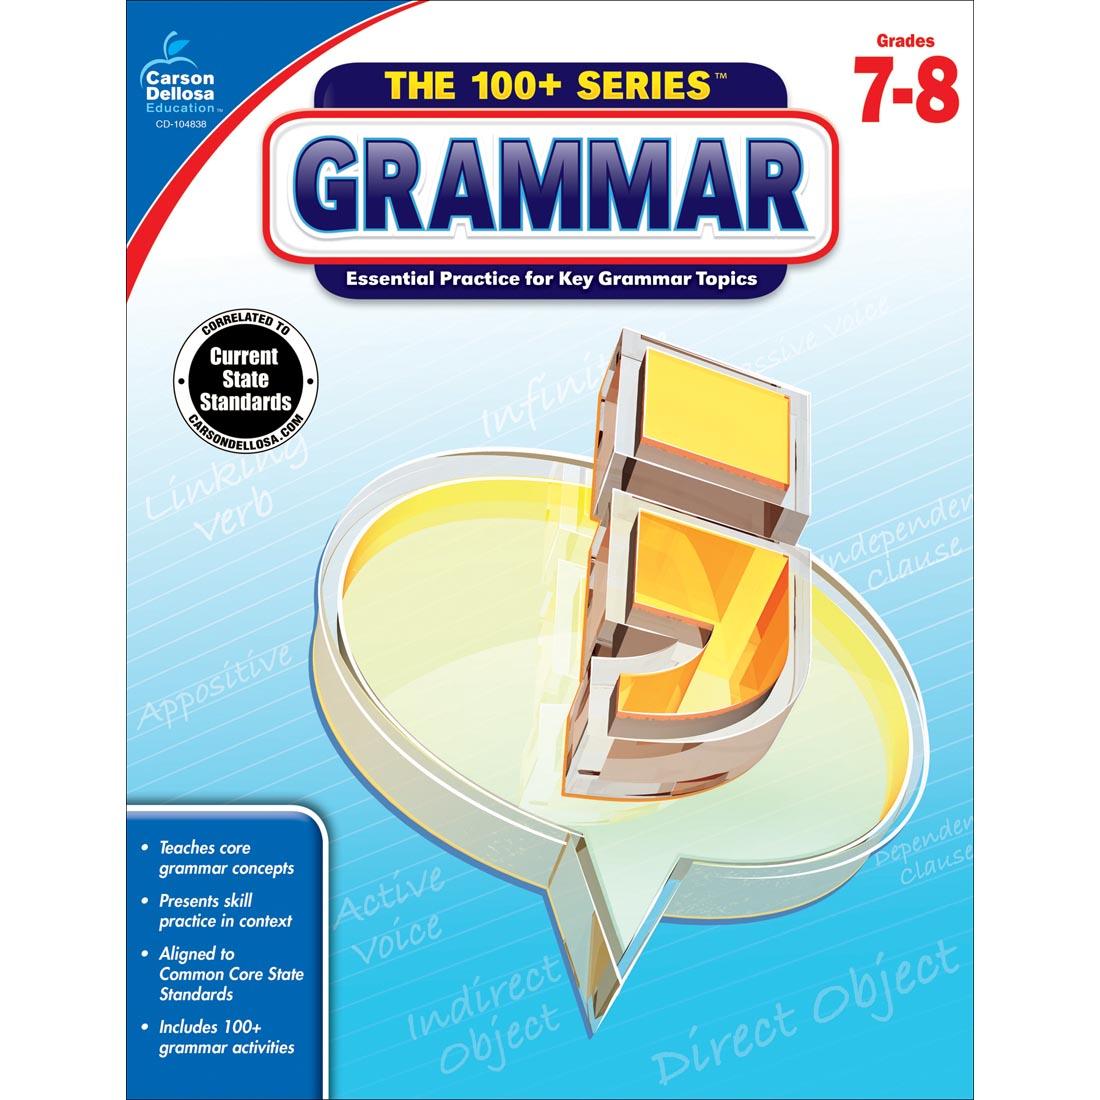 The 100+ Series Grammar by Carson Dellosa Grades 7-8